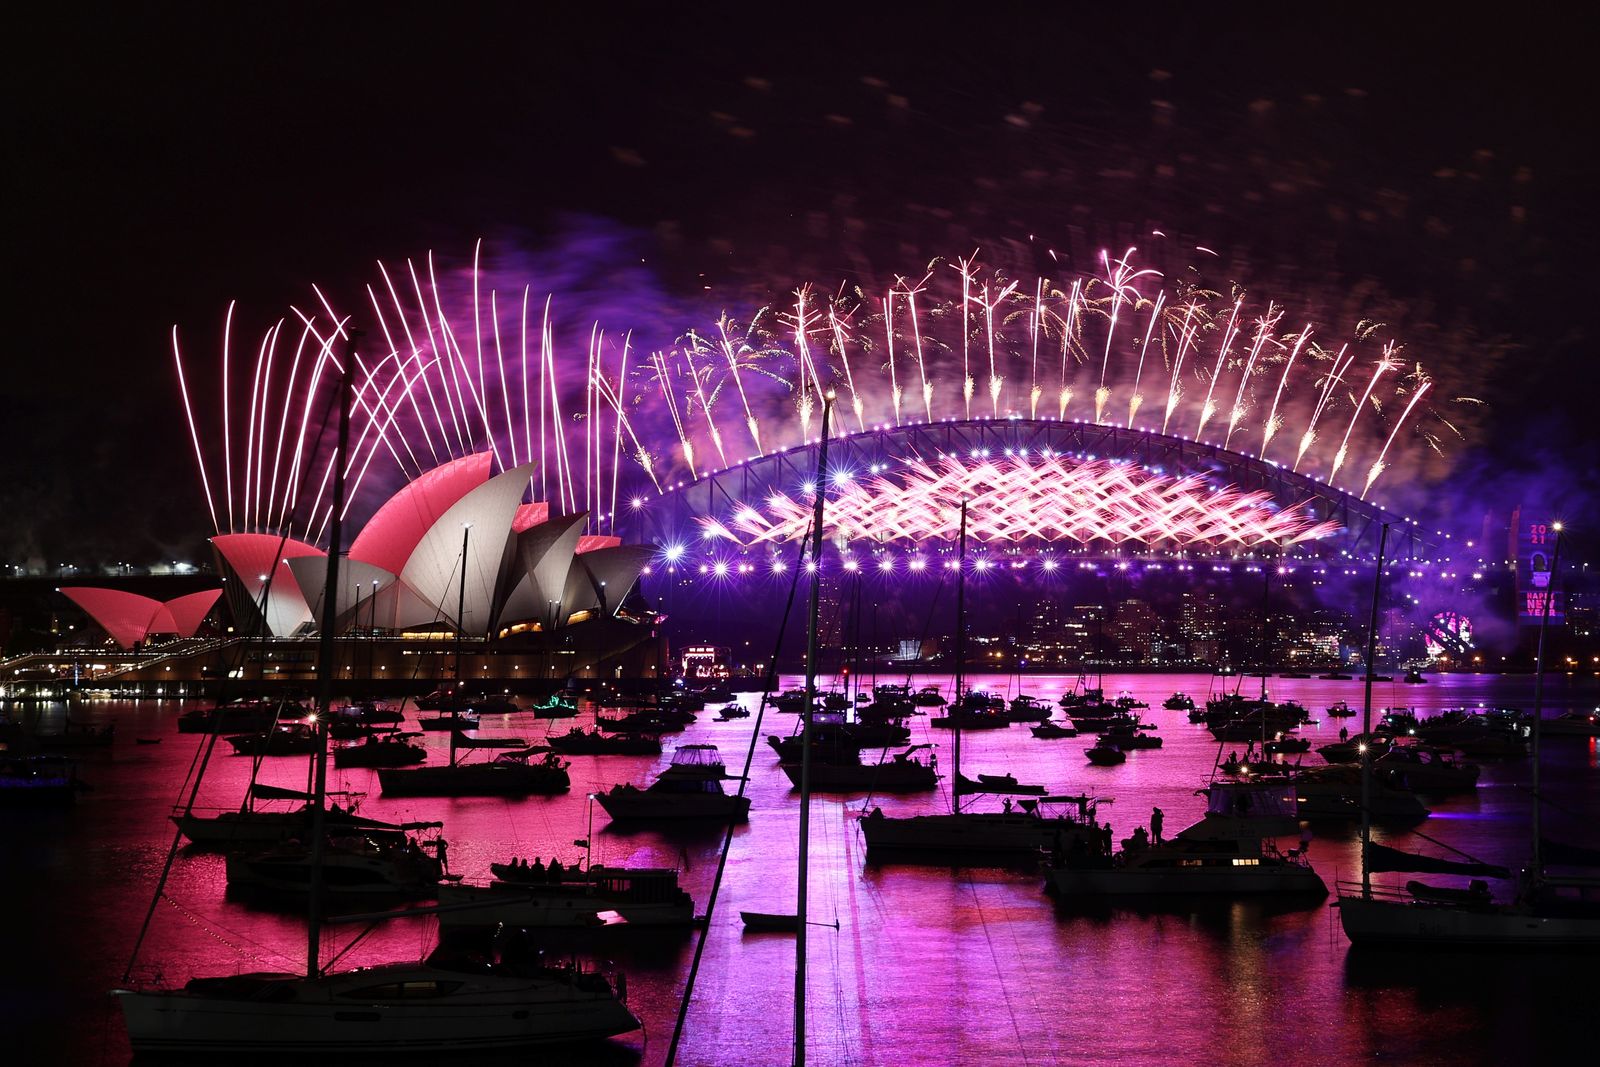 احتفالات ليلة رأس السنة الجديدة في سيدني بأستراليا، 31 ديسمبر 2020 - REUTERS